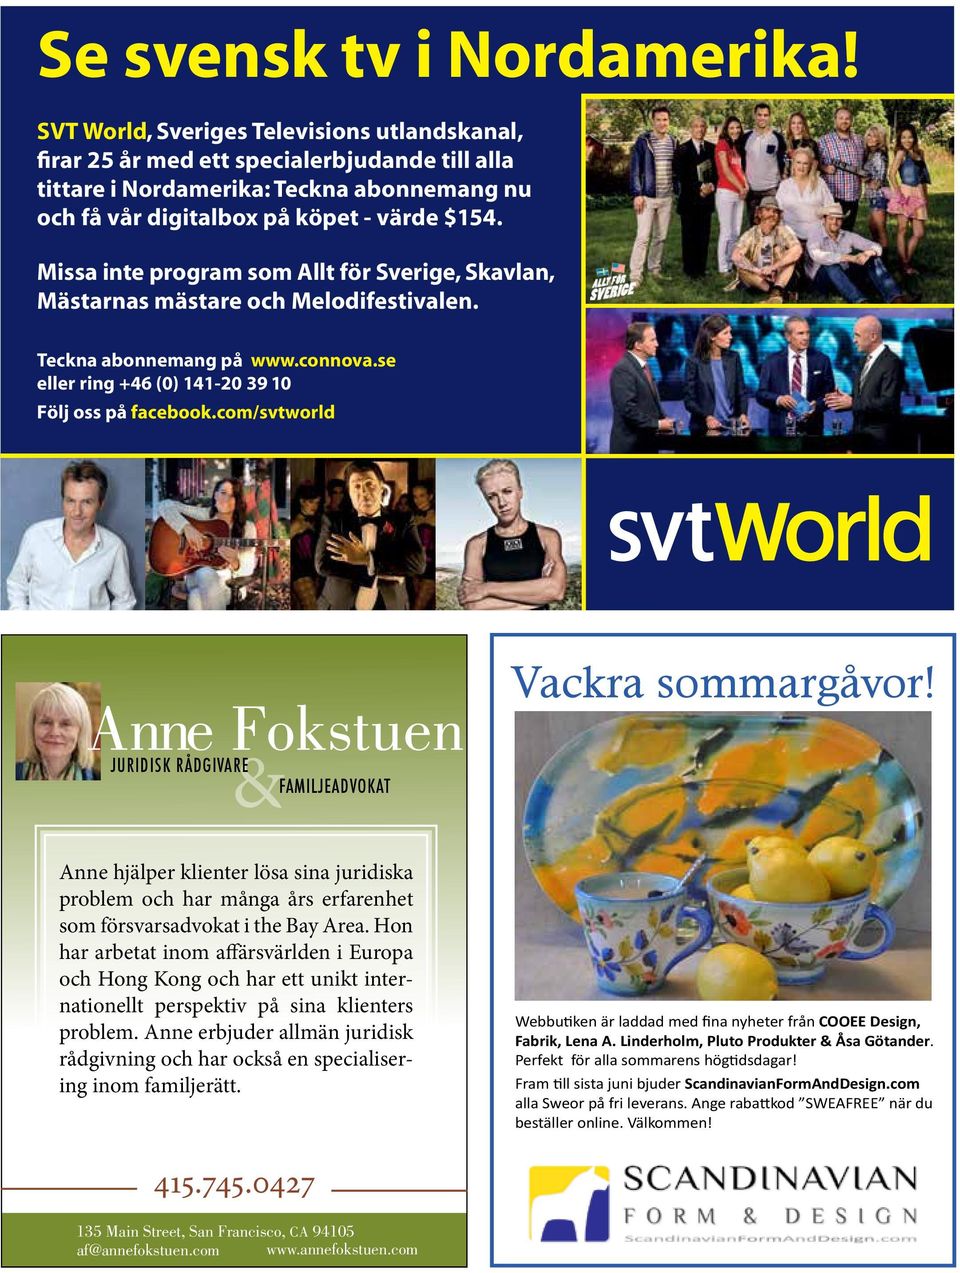 Missa inte program som Allt för Sverige, Skavlan, Mästarnas mästare och Melodifestivalen. Teckna abonnemang på www.connova.se eller ring +46 (0) 141-20 39 10 Följ oss på facebook.